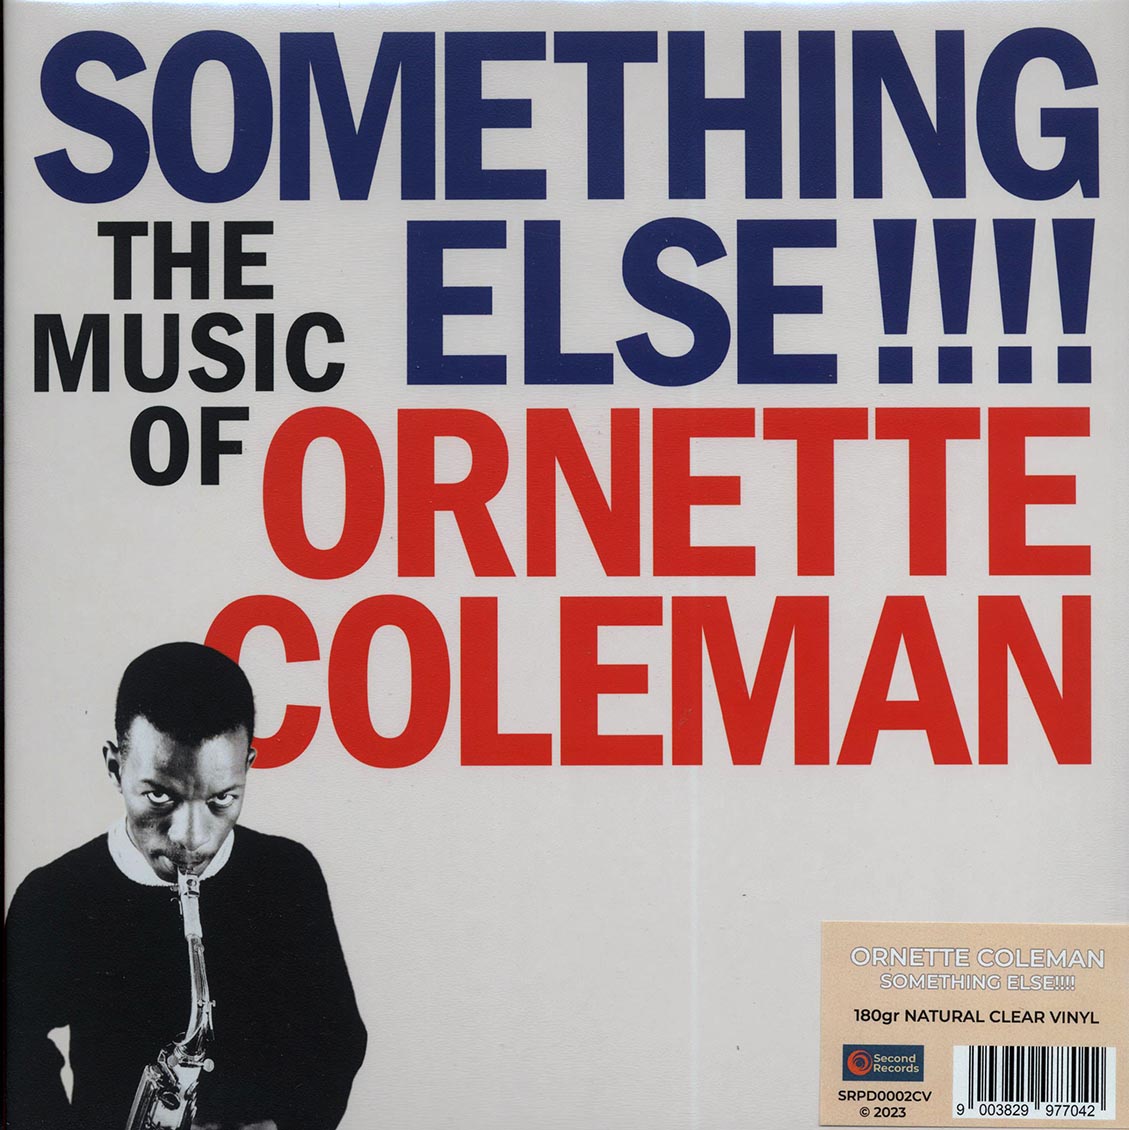 Ornette Coleman - Something Else!!! The Music Of Ornette Coleman (180g) (clear vinyl) - Vinyl LP